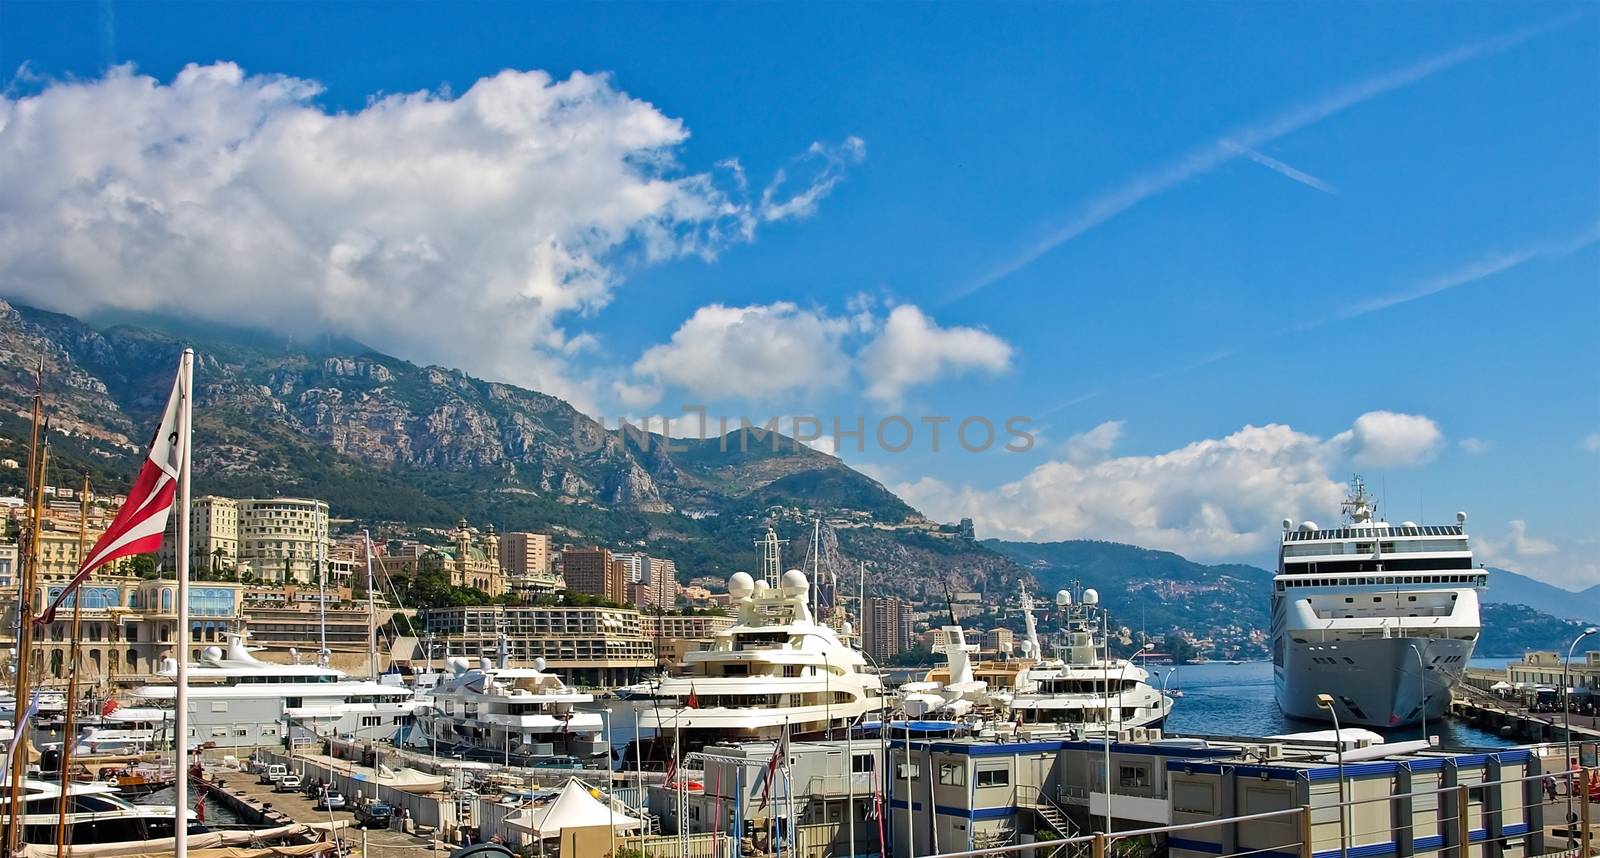 Yacht Club de Monaco by Venakr